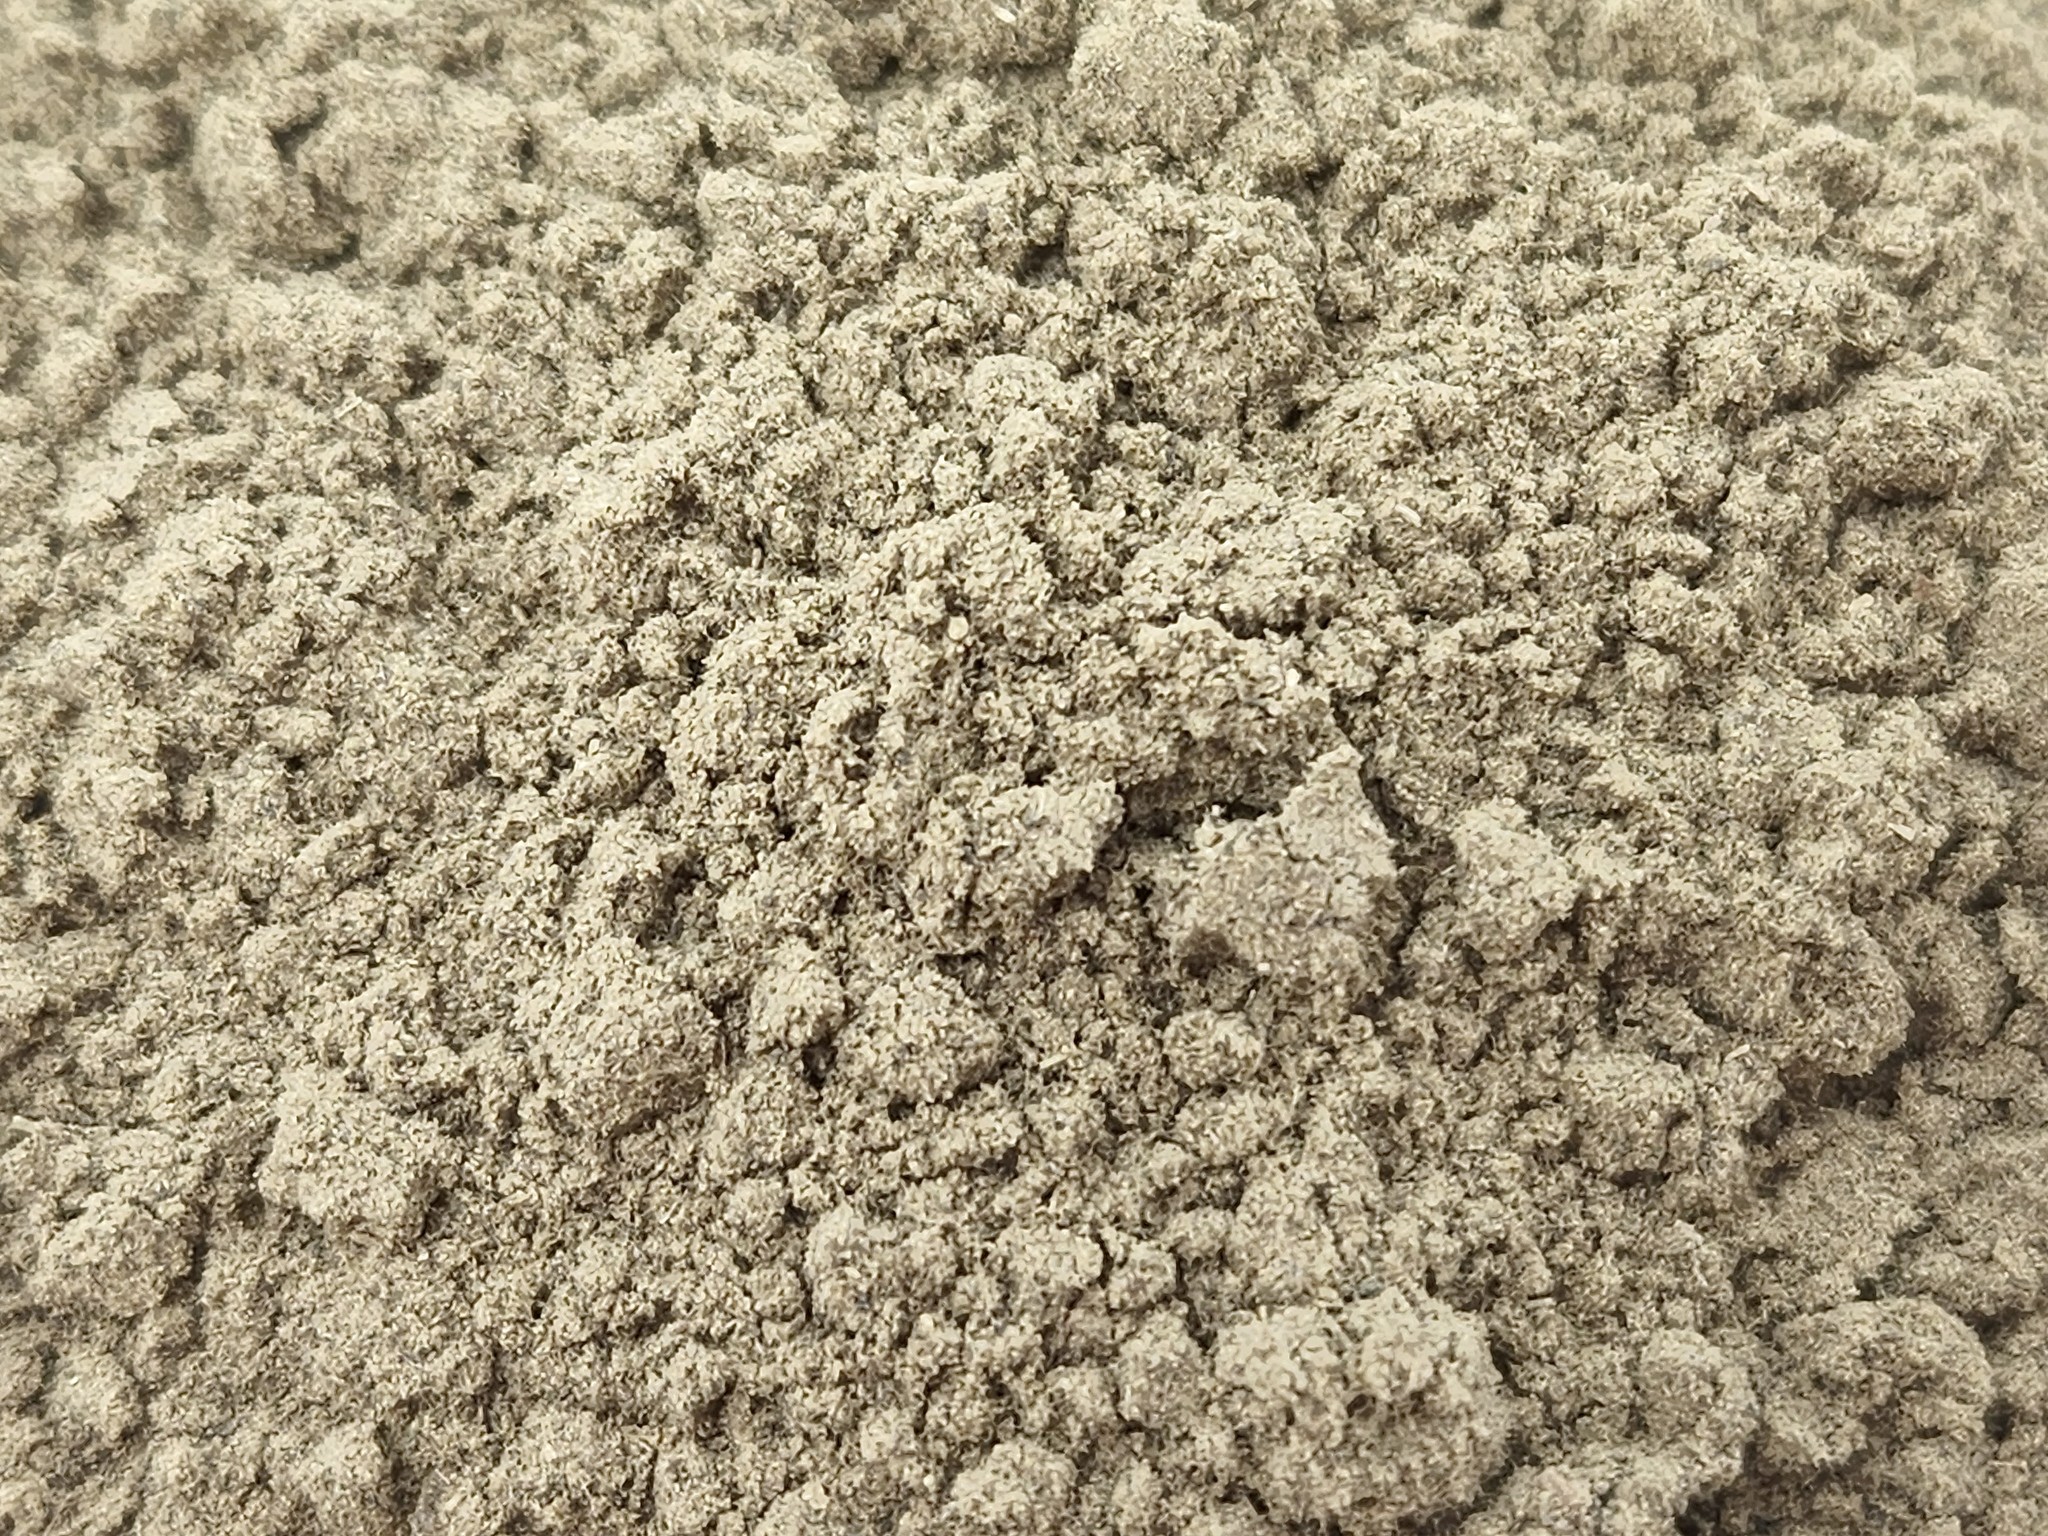 Mullein Leaf Powder Bulk